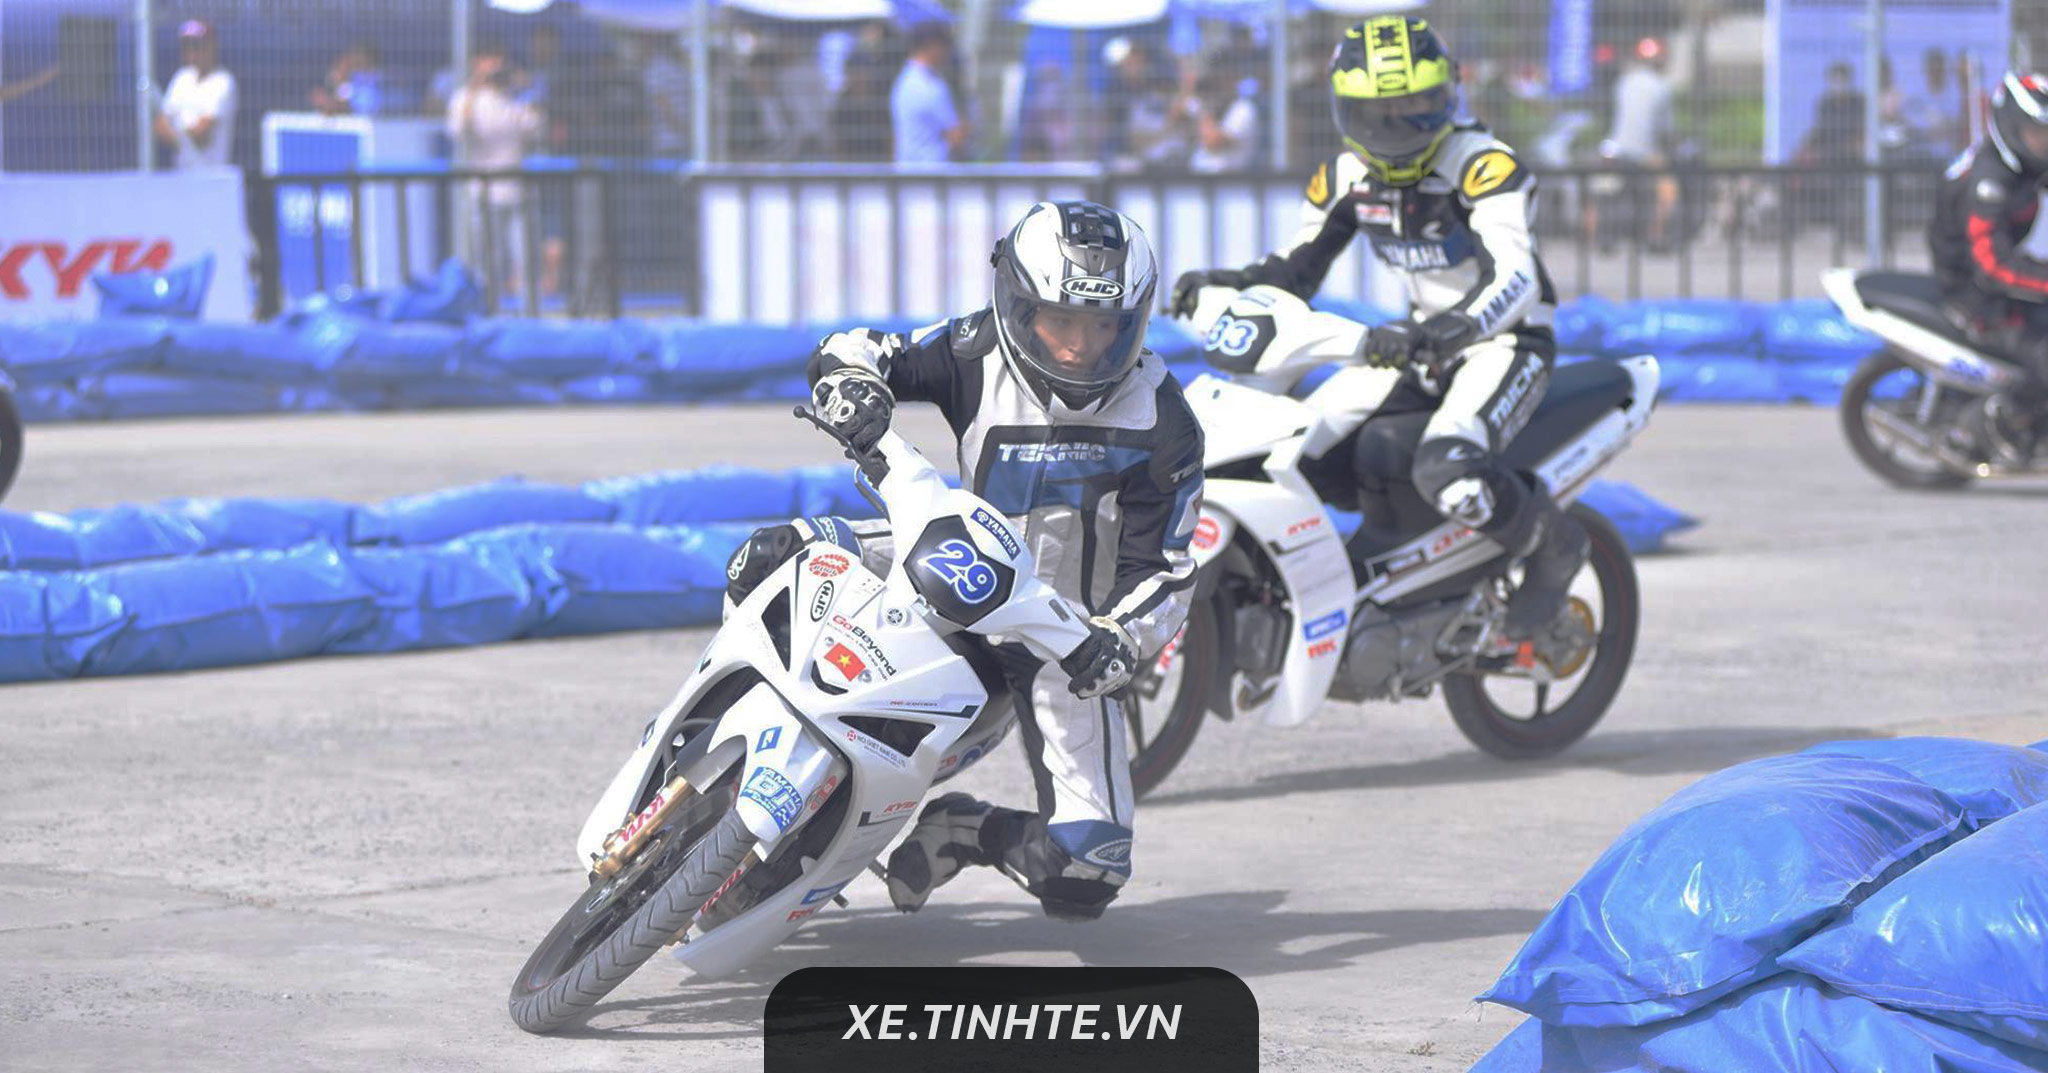 Yamaha Việt Nam tổ chức giải đua xe Yamaha GP 2018 tại Sài Gòn vào ngày 04/02